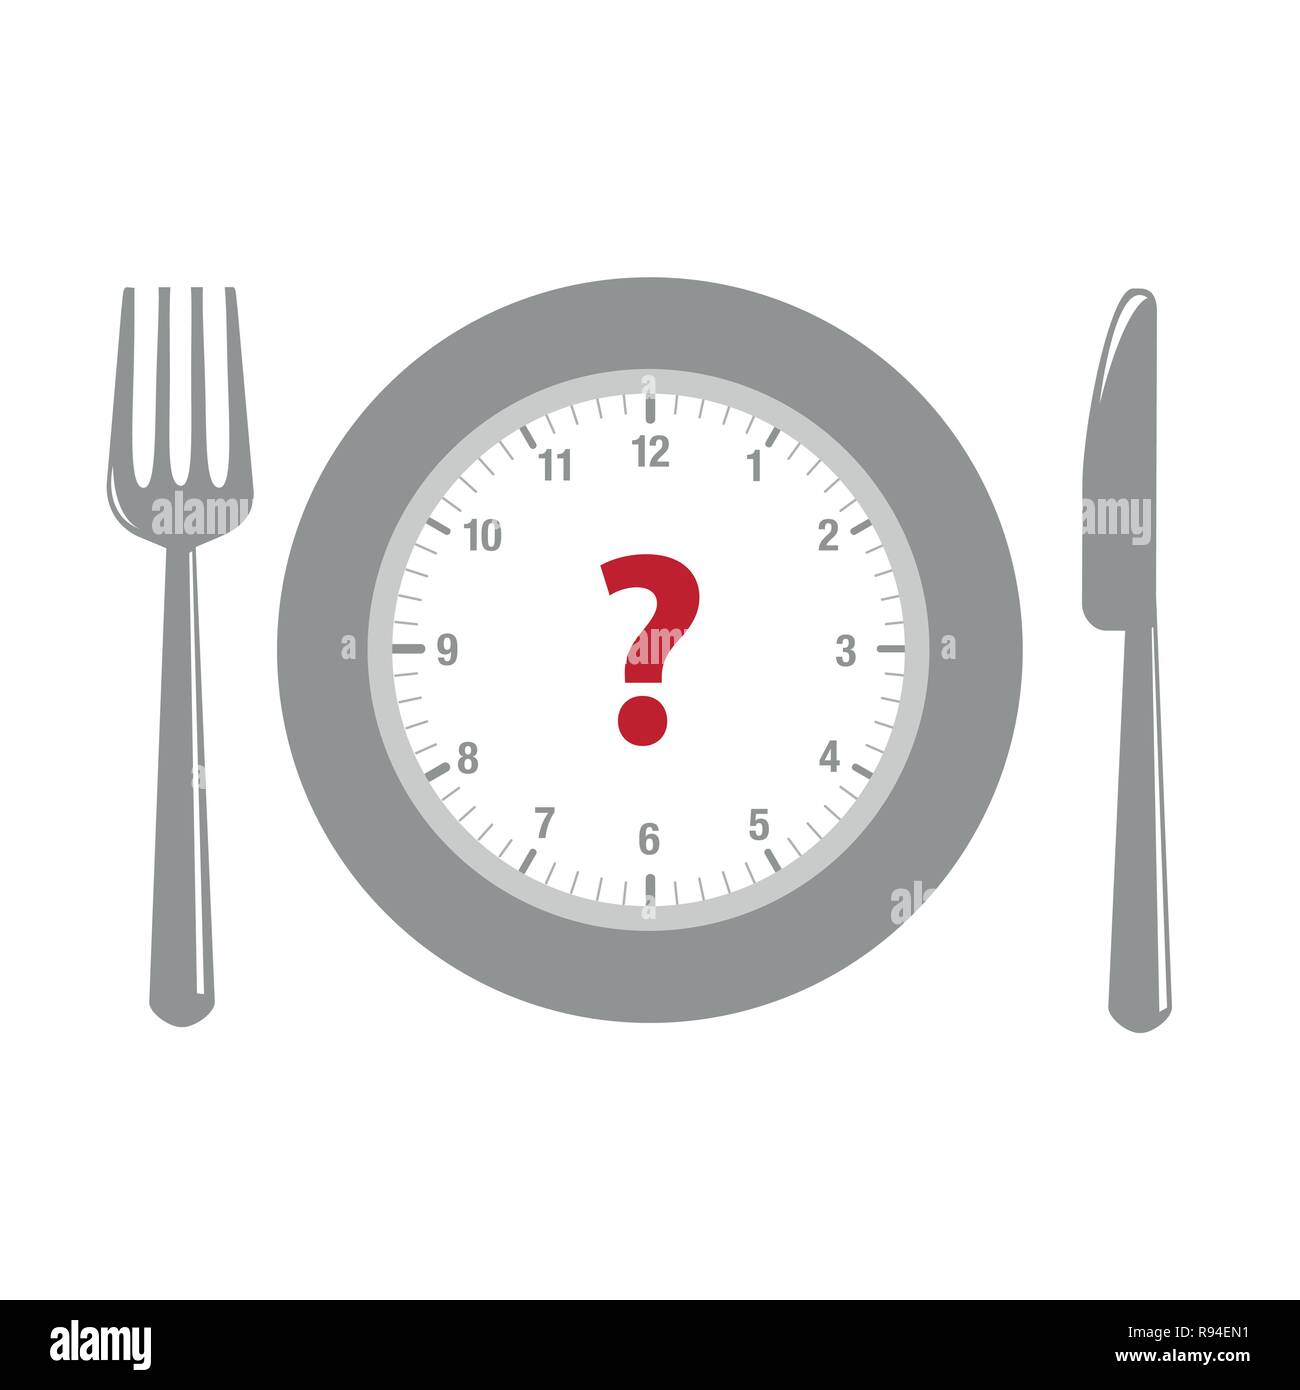 Uhr- und Fragezeichen in einem Teller mit Besteck Vektor-illustration EPS 10. Stock Vektor